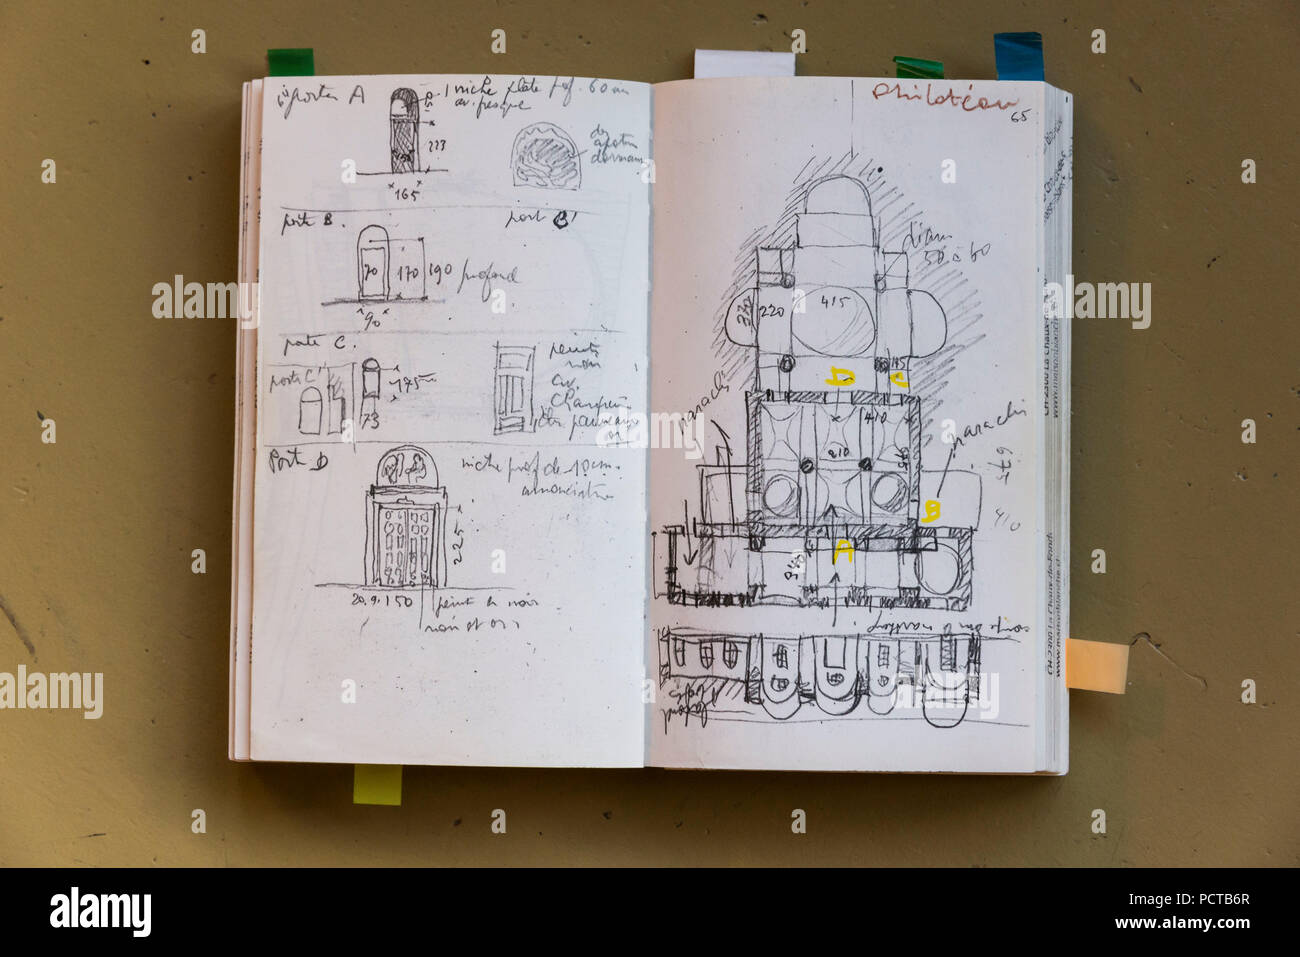 Skizzenbuch der Architekt Le Corbusier für La Maison Blanche, La  Chaux-de-Fonds, Jura, Kanton Neuenburg, West Switzerland, Schweiz  Stockfotografie - Alamy